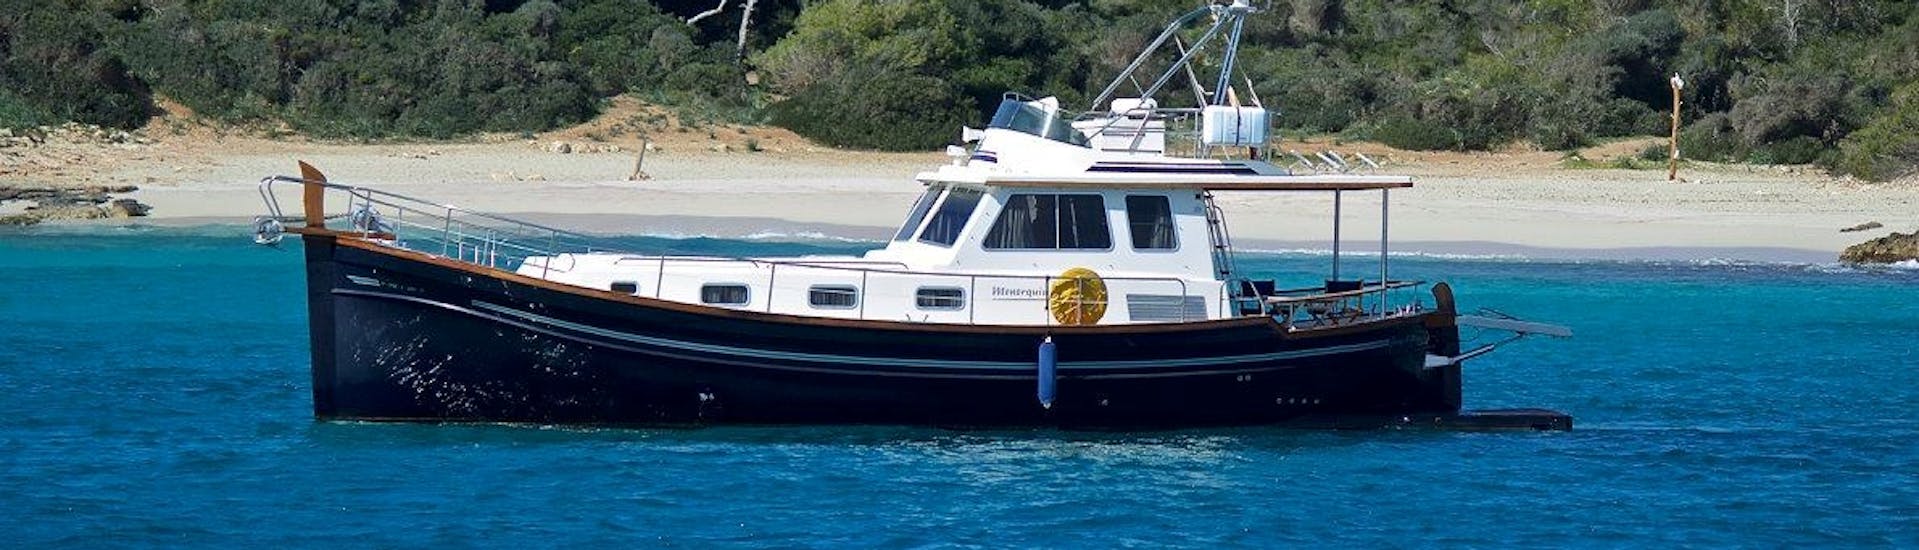 Gita privata in barca da Porto Cristo a Cala Mesquida con bagno in mare e visita turistica.